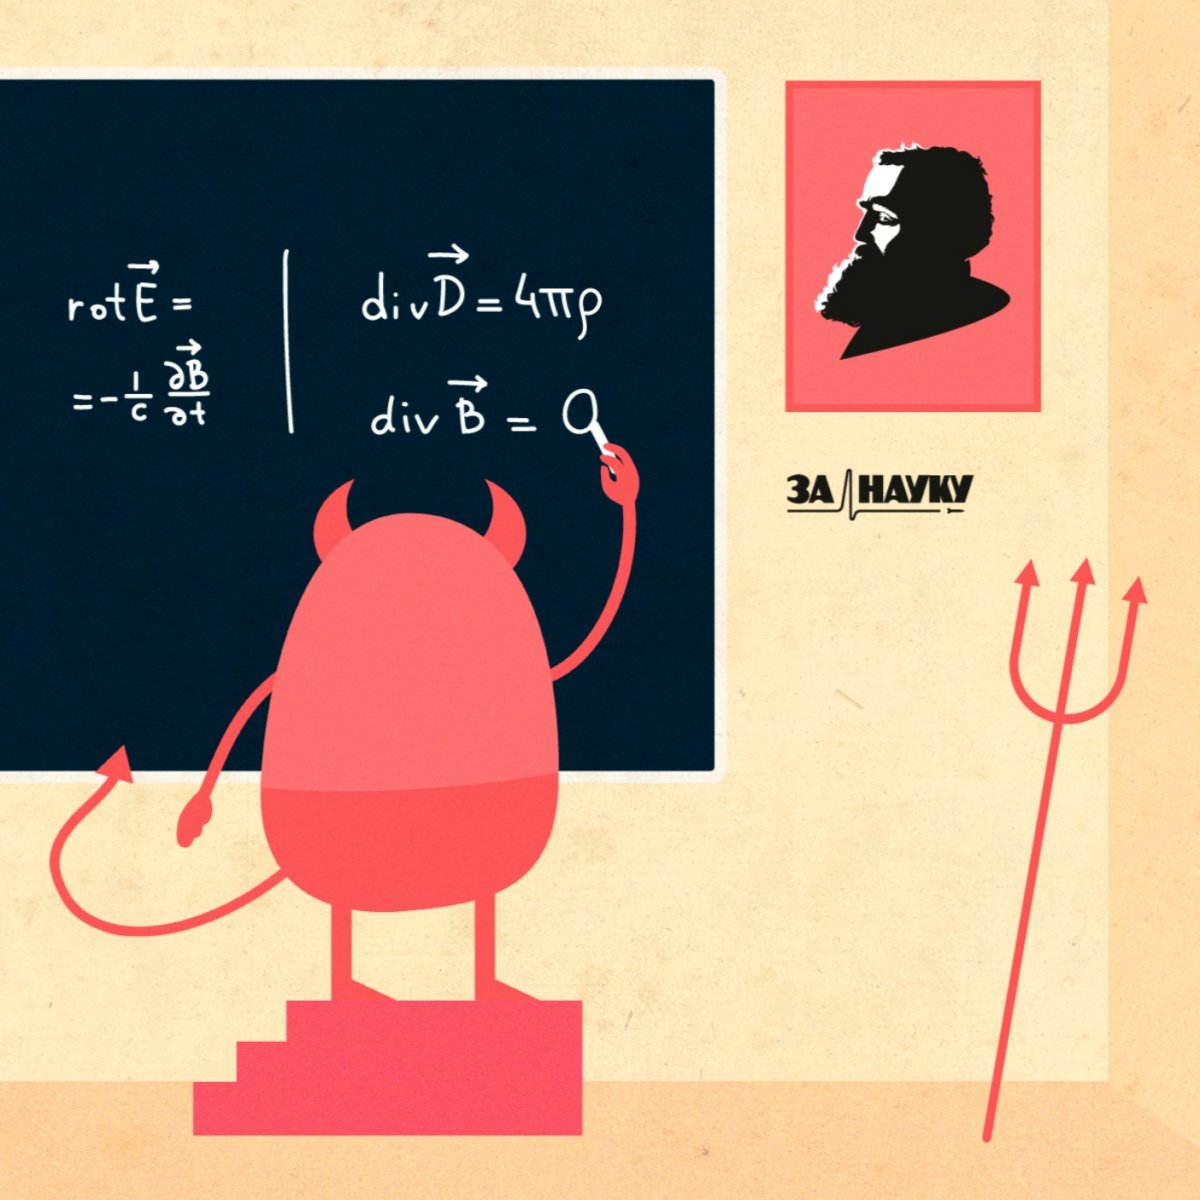 В этот день, 13 июня 1831 года родился Джеймс Клерк Максвелл — британский физик, математик и механик